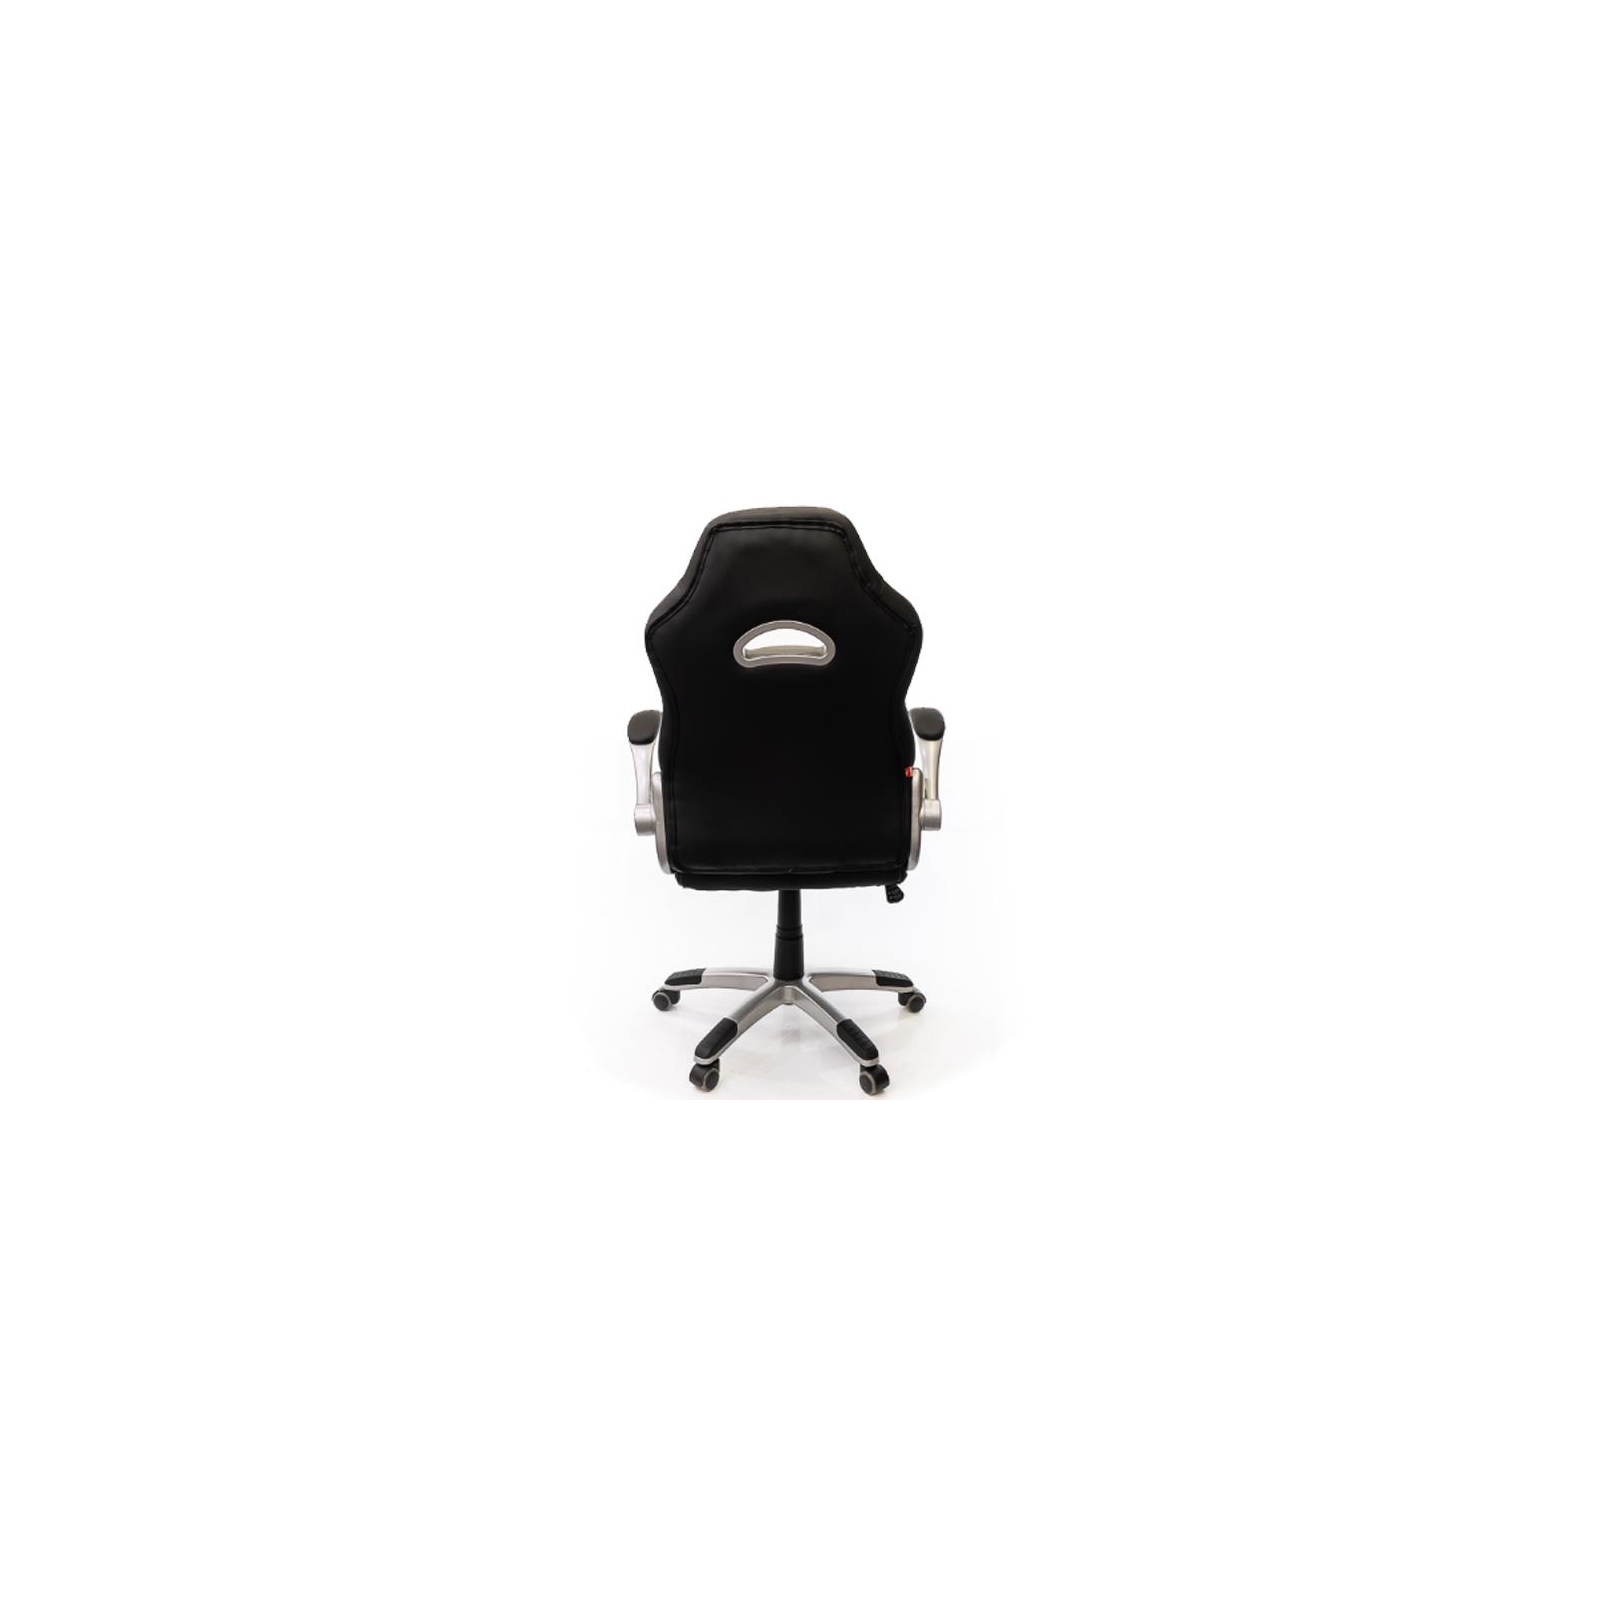 Кресло игровое Аклас Форсаж-8 PL TILT Лаймовое (10922) изображение 4